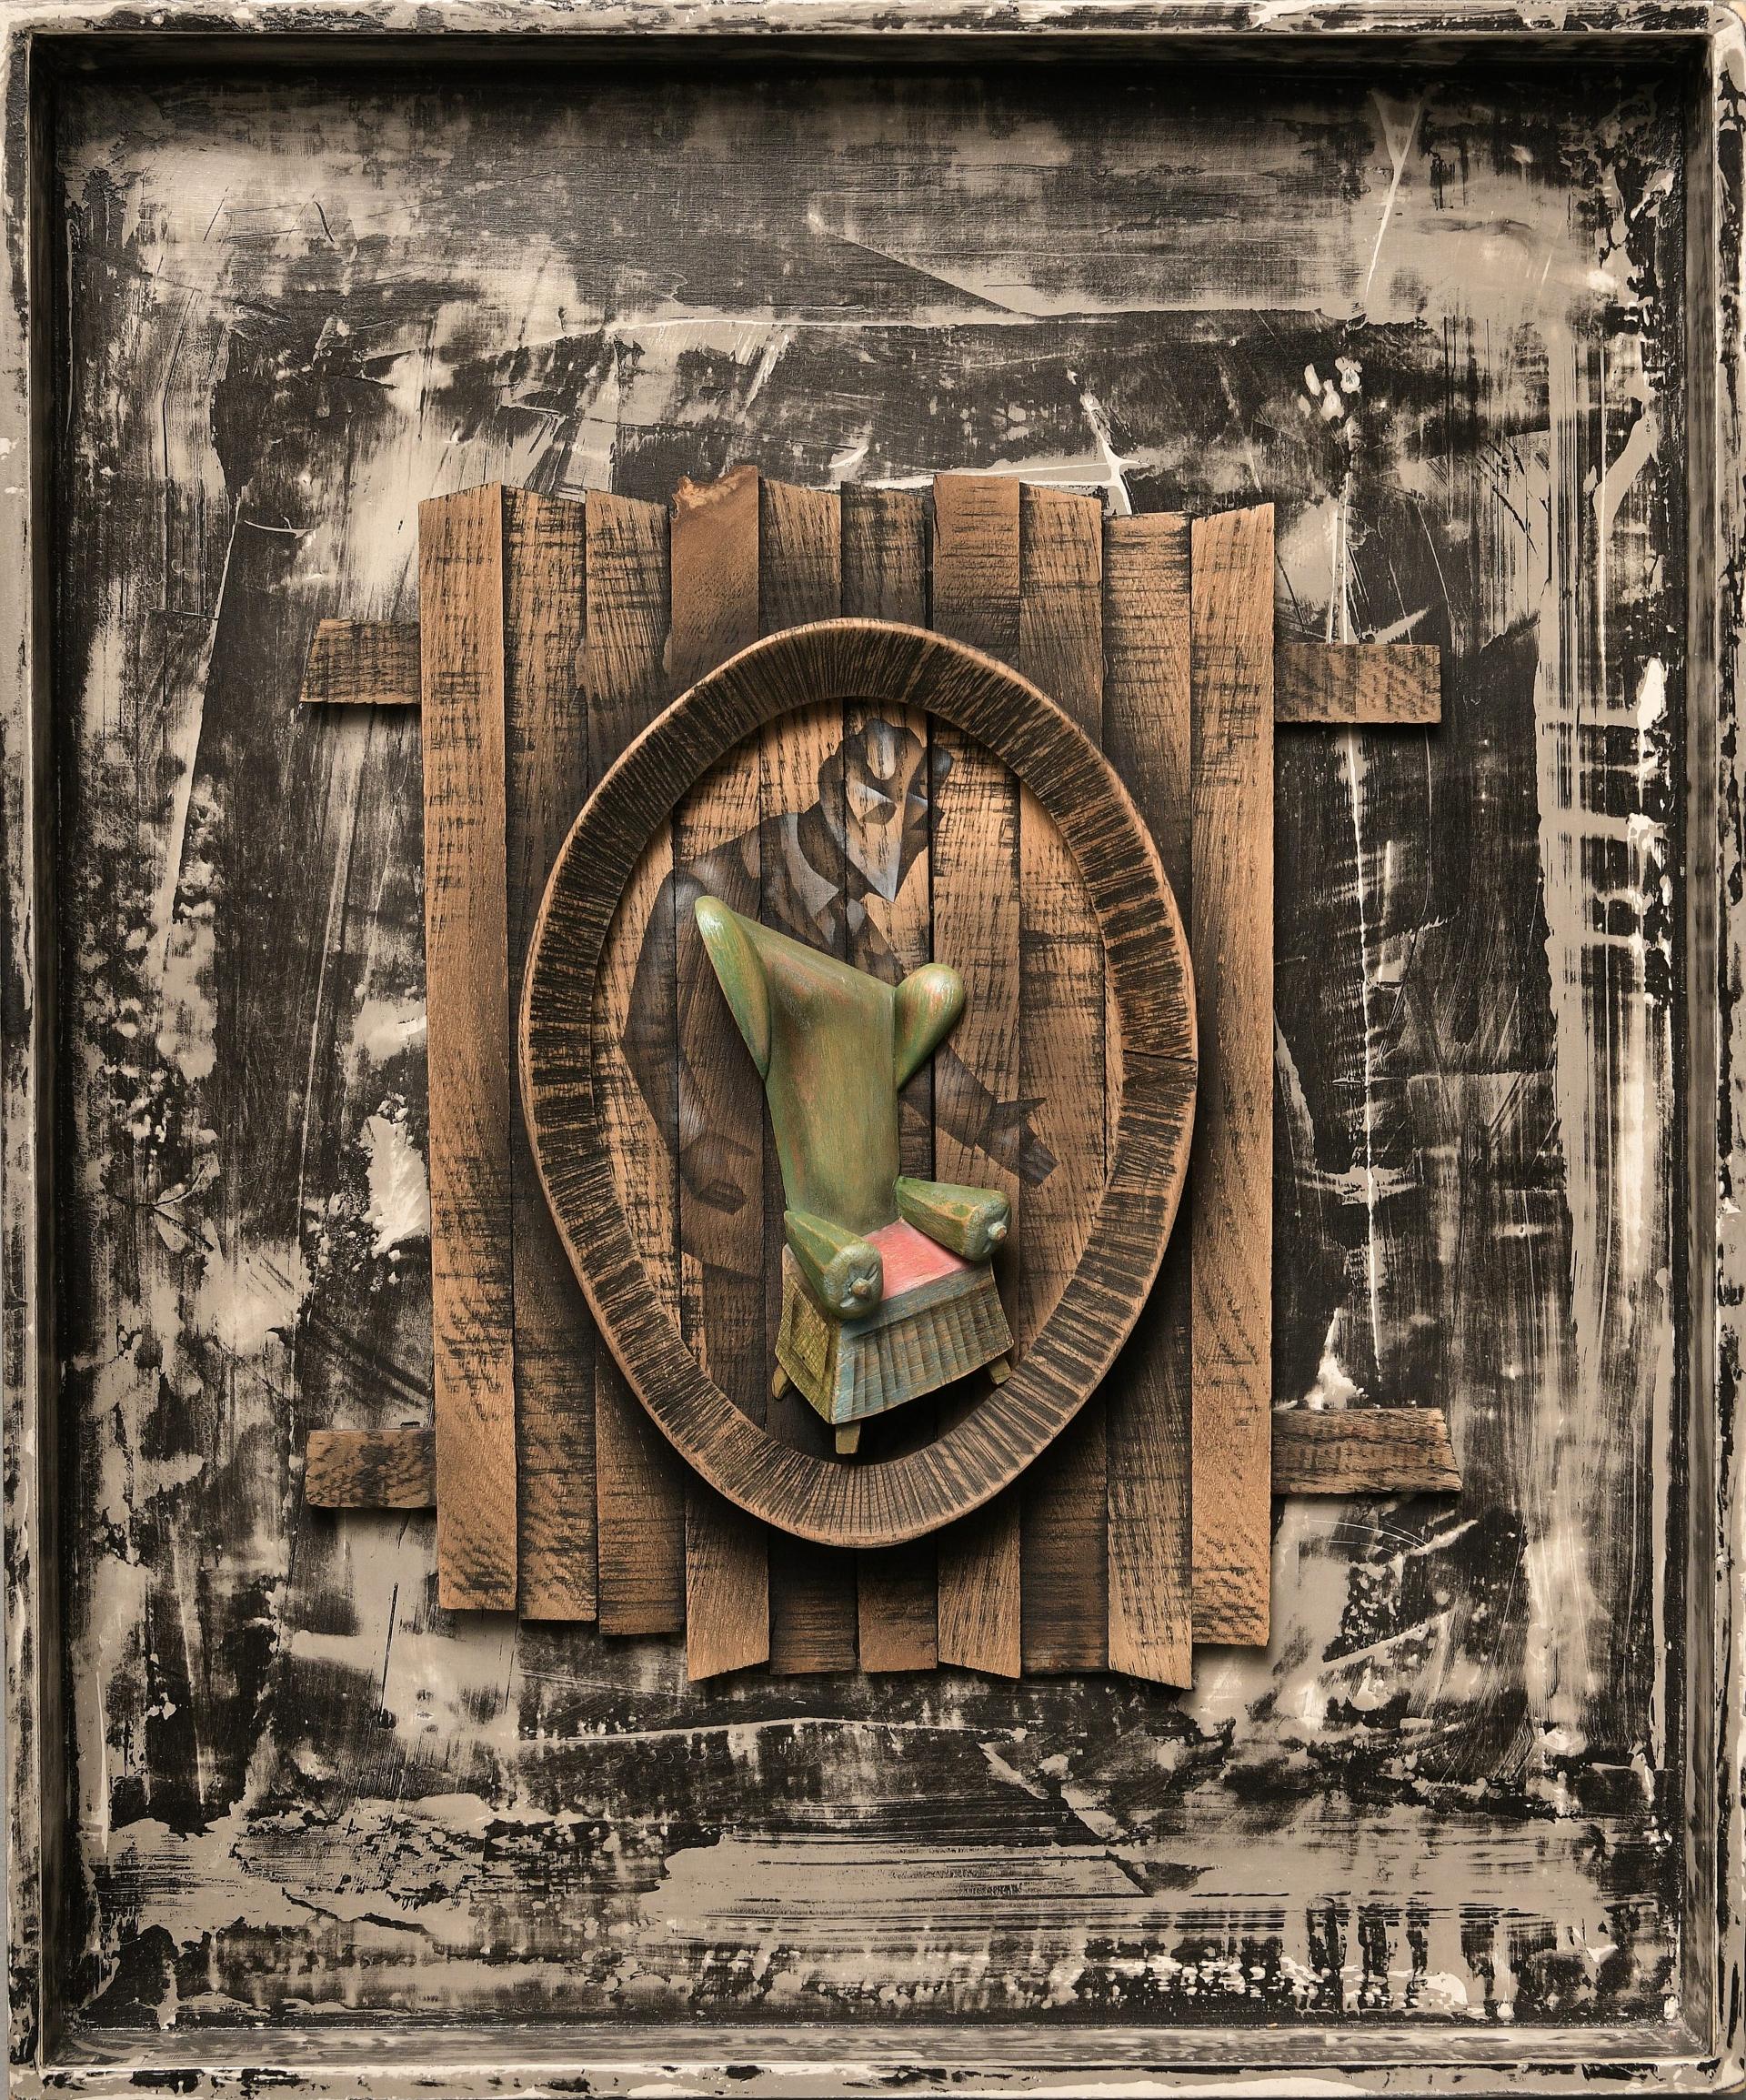 „Have a Seat“ Wandskulptur „Have a Seat“ 23" x 19" Zoll von Gosha Ostretsov

Geboren 1967, in Moskau
Lebte zehn Jahre lang in Paris (1988 - 1998), lebt und arbeitet jetzt in Moskau.

ÖFFENTLICHE SAMMLUNGEN:

Die Staatliche Tretjakow-Galerie, St.